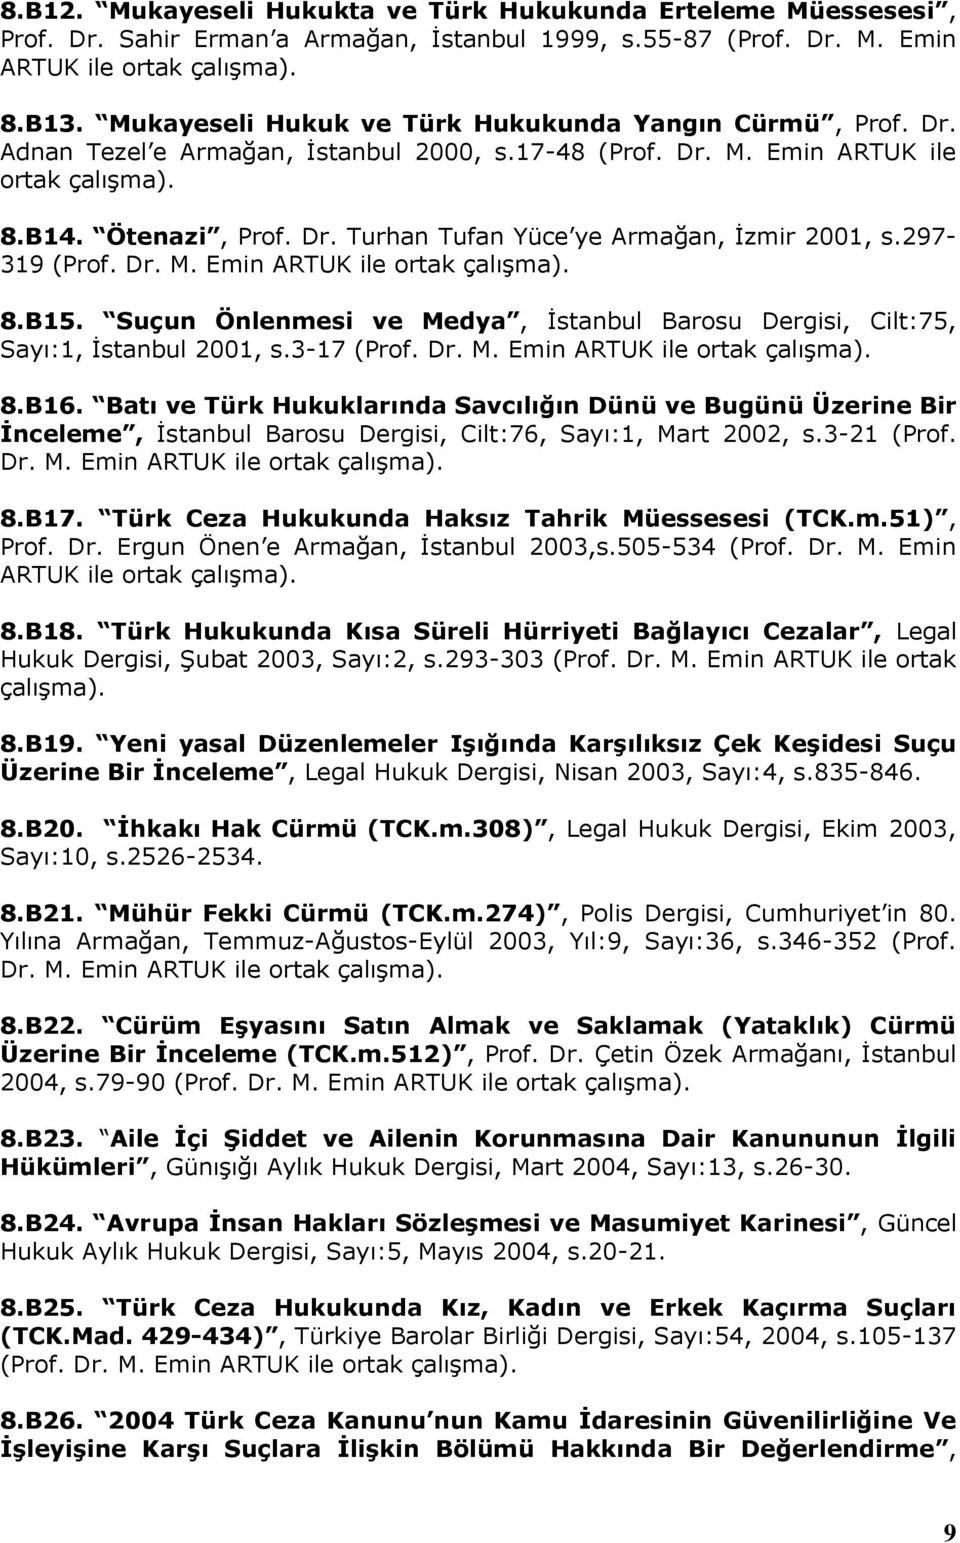 297-319 (Prof. Dr. M. Emin ARTUK ile ortak çalışma). 8.B15. Suçun Önlenmesi ve Medya, İstanbul Barosu Dergisi, Cilt:75, Sayı:1, İstanbul 2001, s.3-17 (Prof. Dr. M. Emin ARTUK ile ortak çalışma). 8.B16.